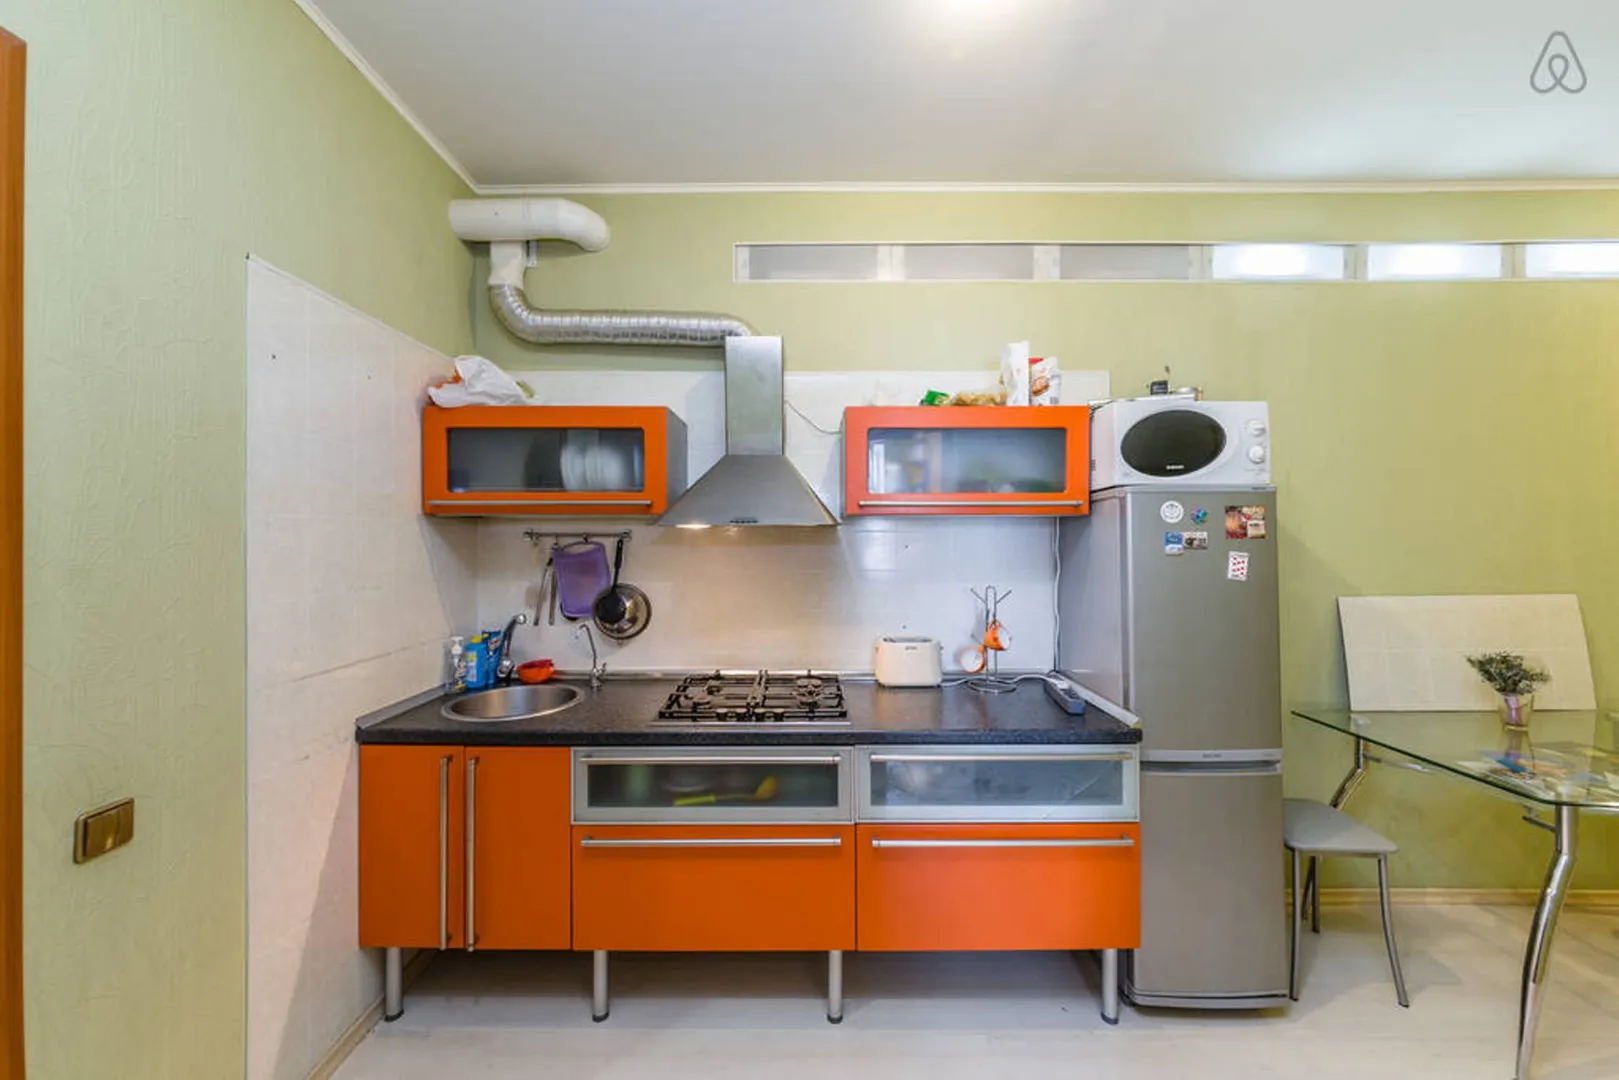 Общая кухня на 4 комнаты, вся необходимая посуда и два больших холодильника.